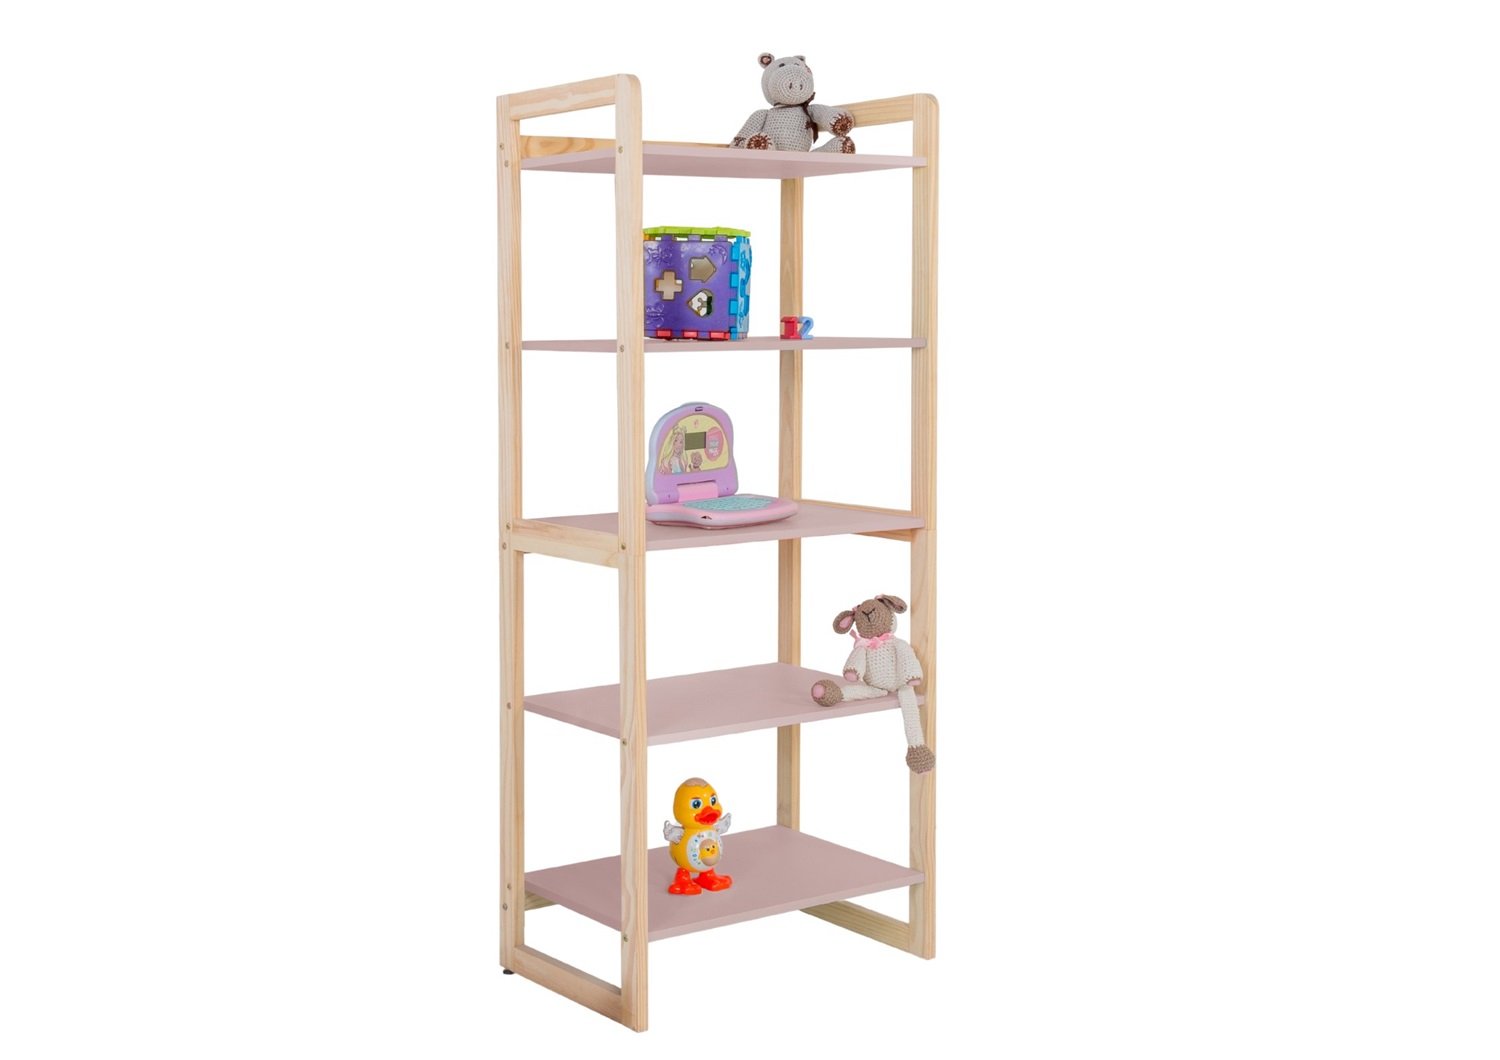 Estante Multiuso Prateleiras Organizador de Livros e Brinquedos Infantil Colore 150cm:rose - 1